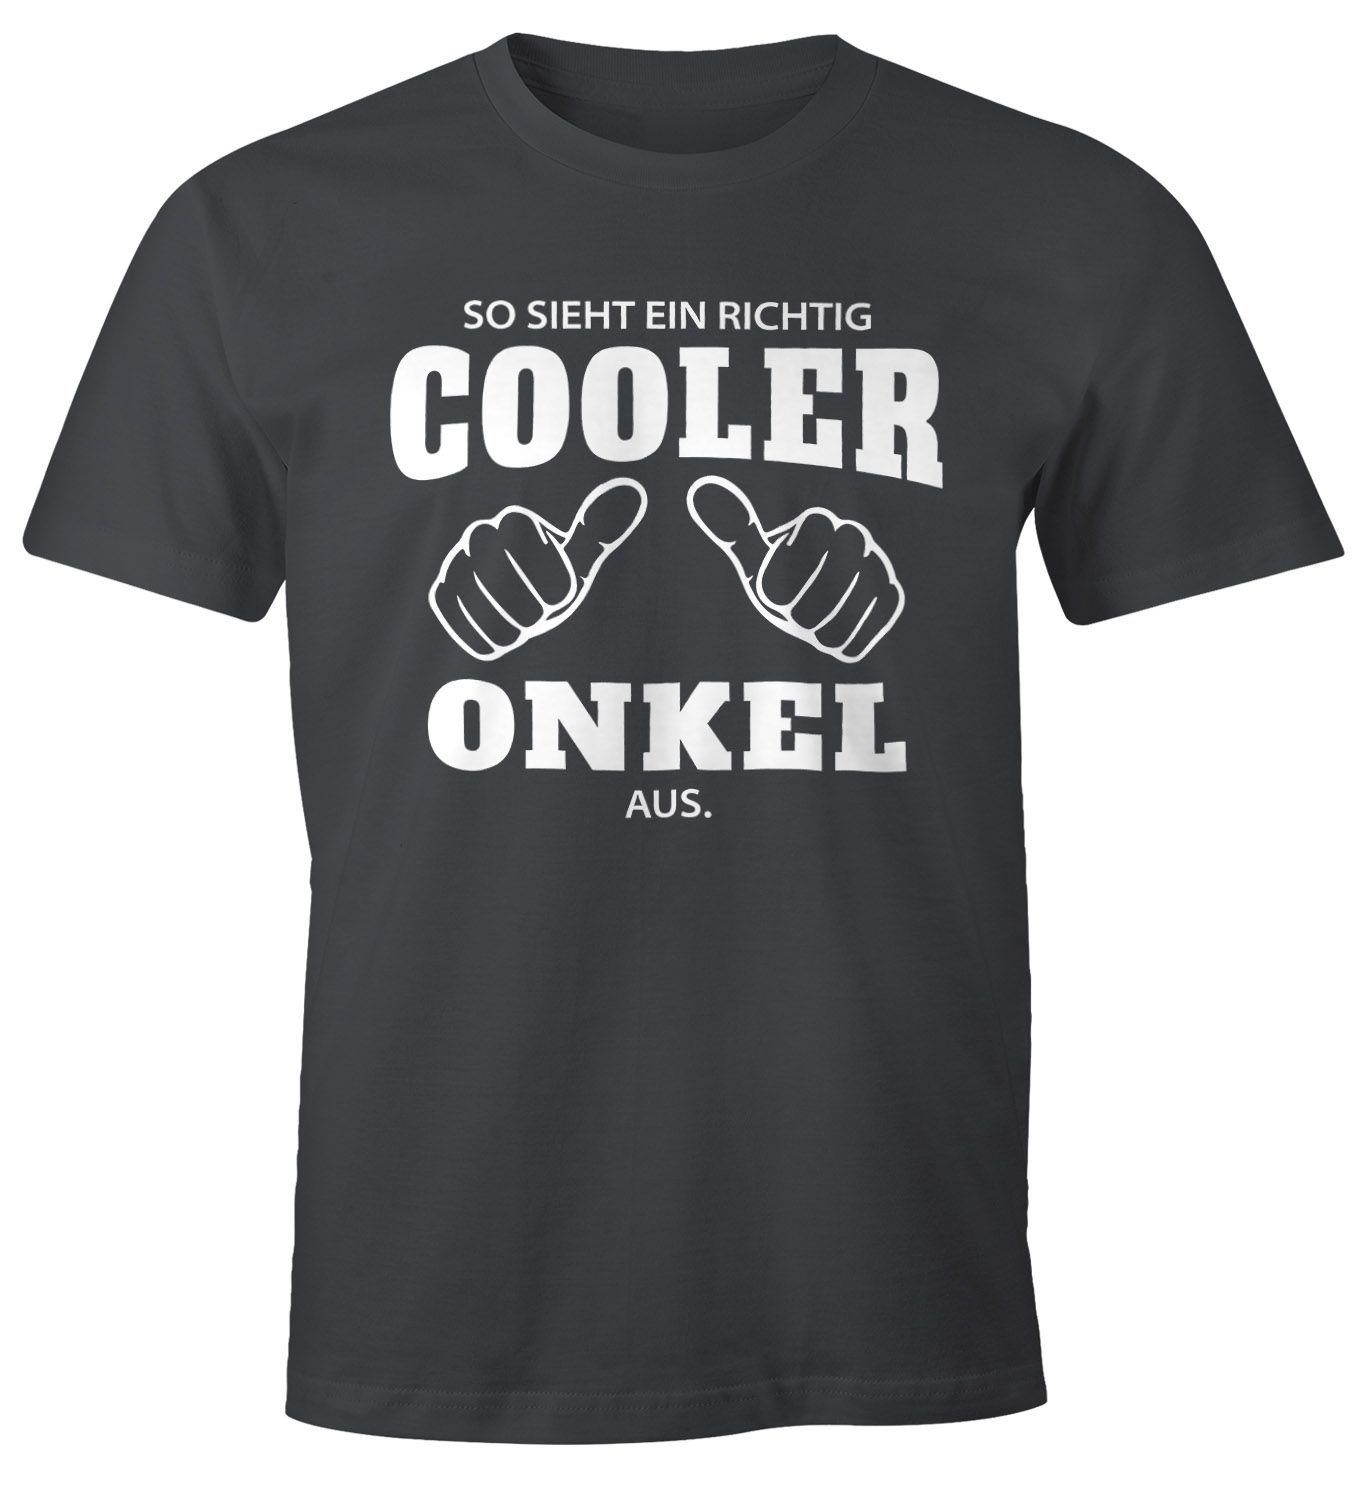 [object sieht Object] cooler Fun-Shirt grau Print T-Shirt ein richtig ein mit richtig Onkel Moonworks® Print-Shirt aus MoonWorks So Herren